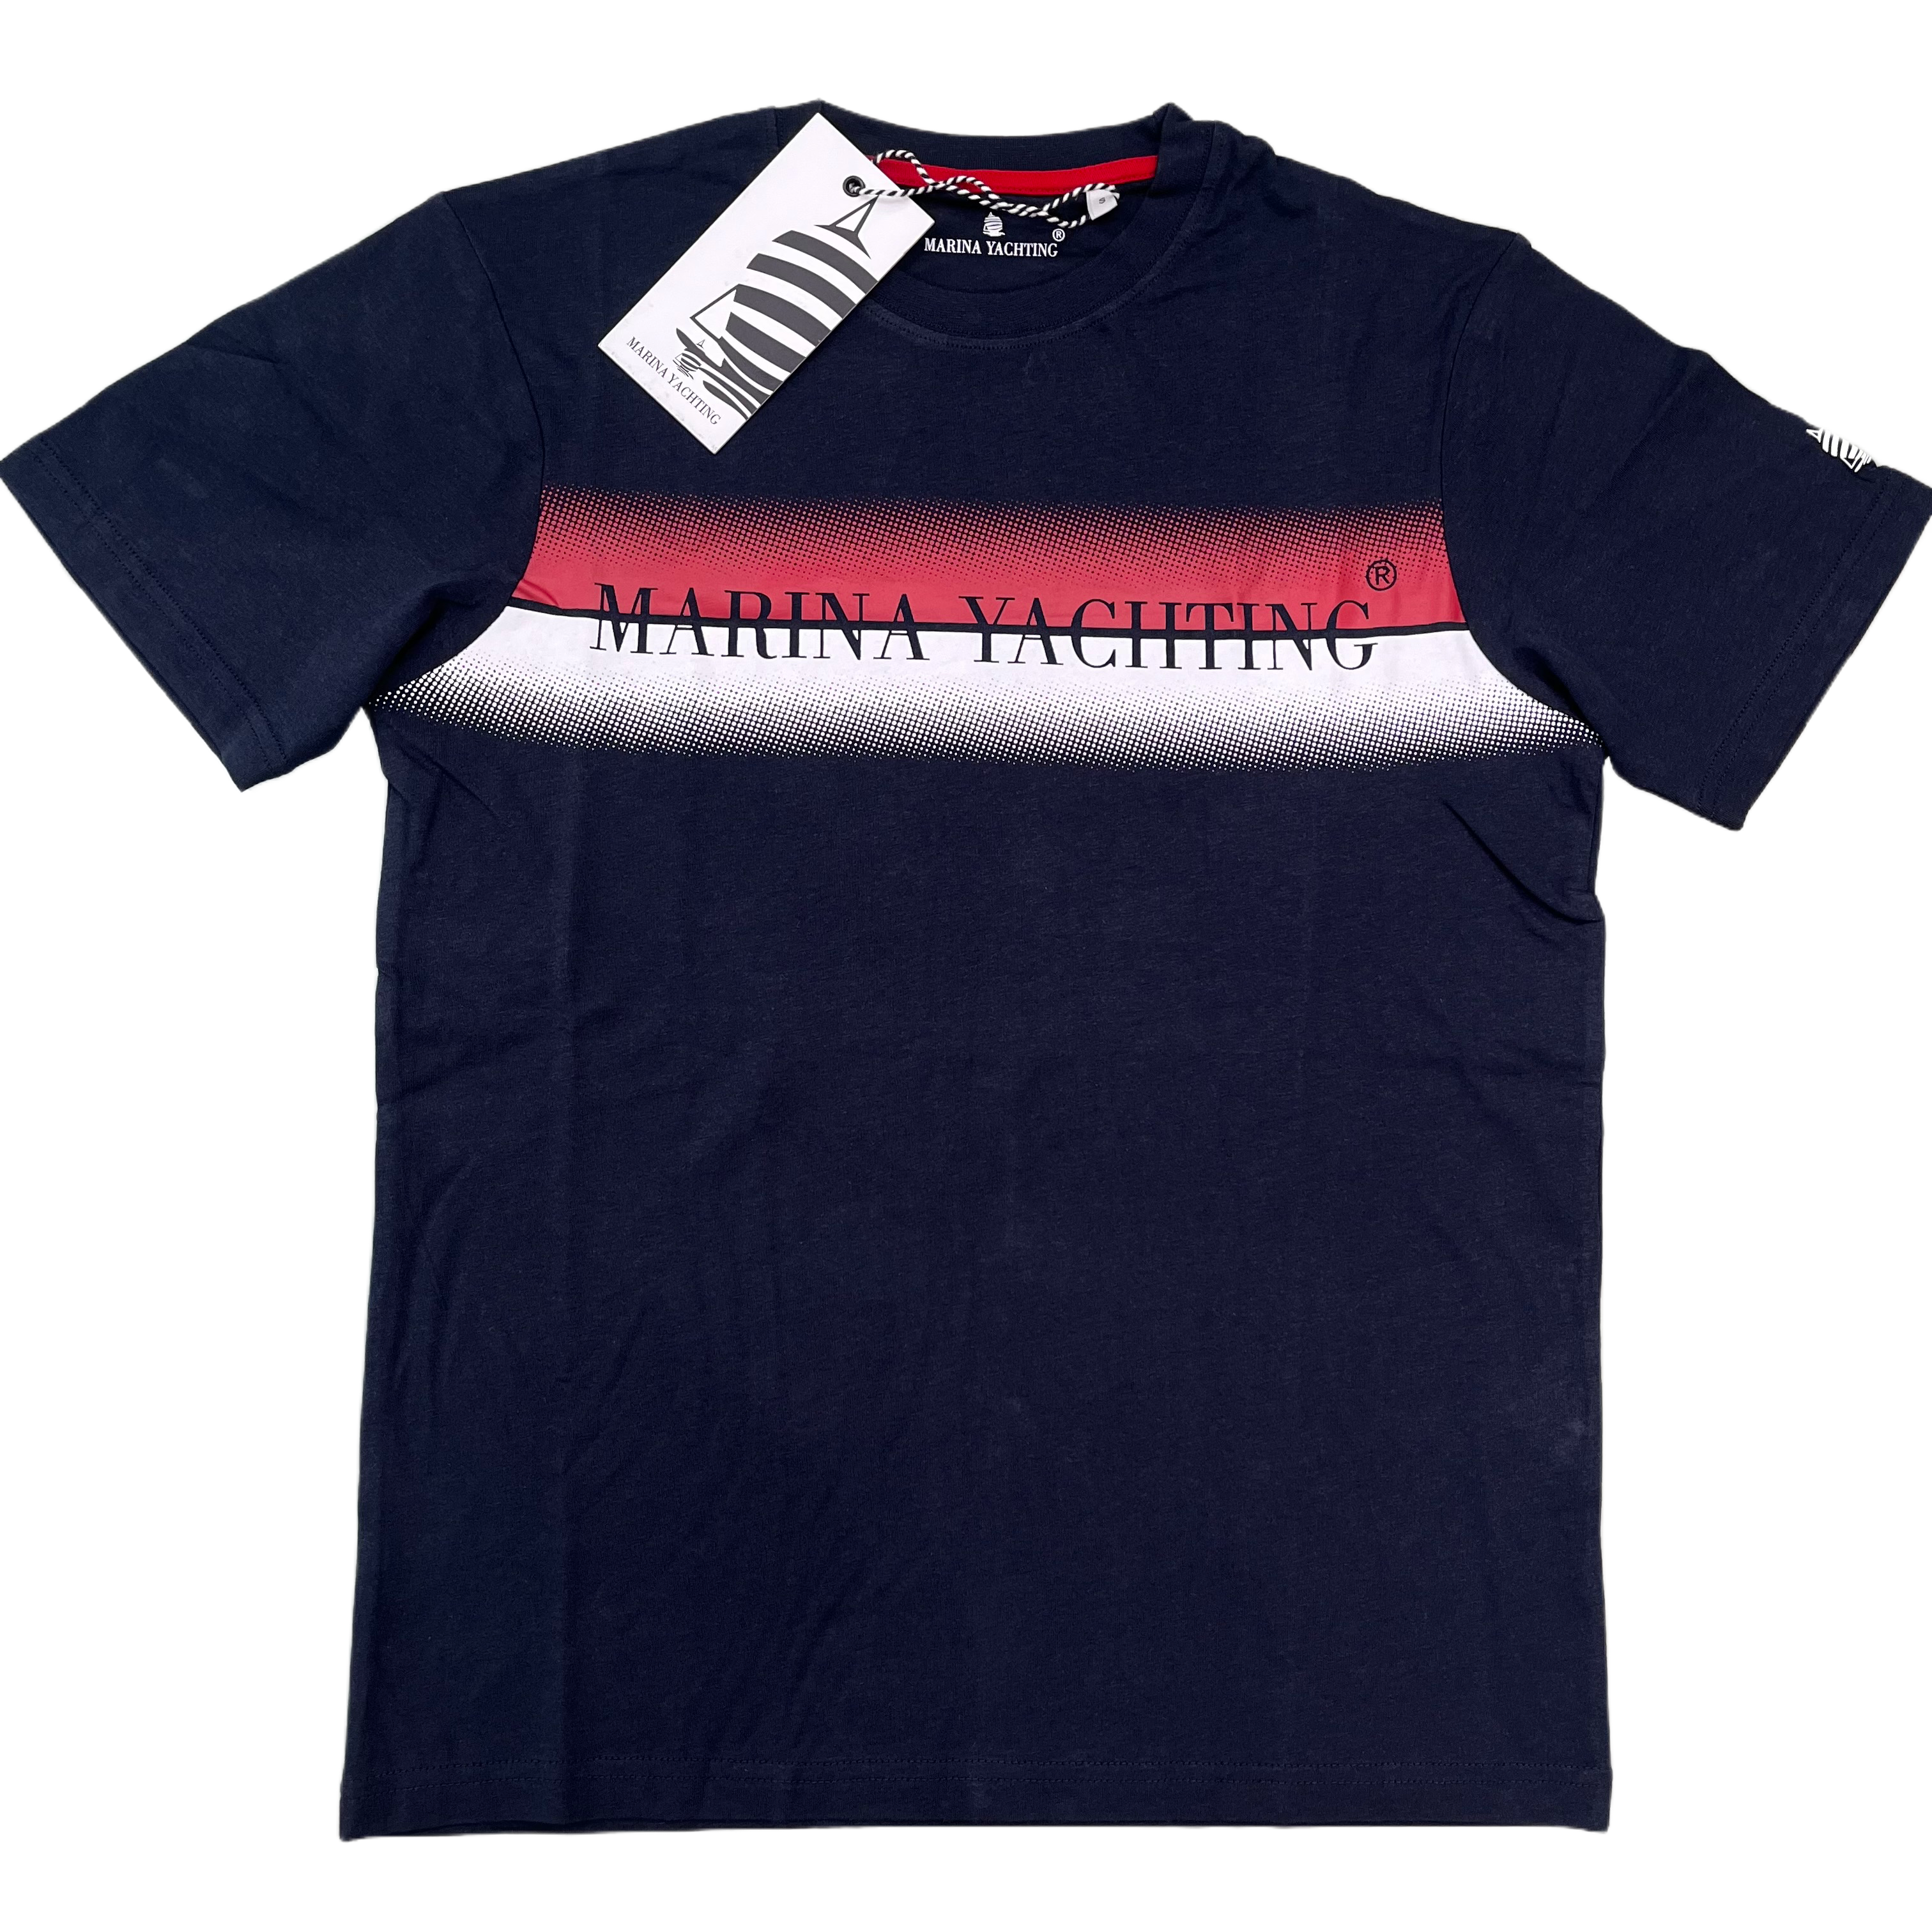 T-shirt Marina yachting